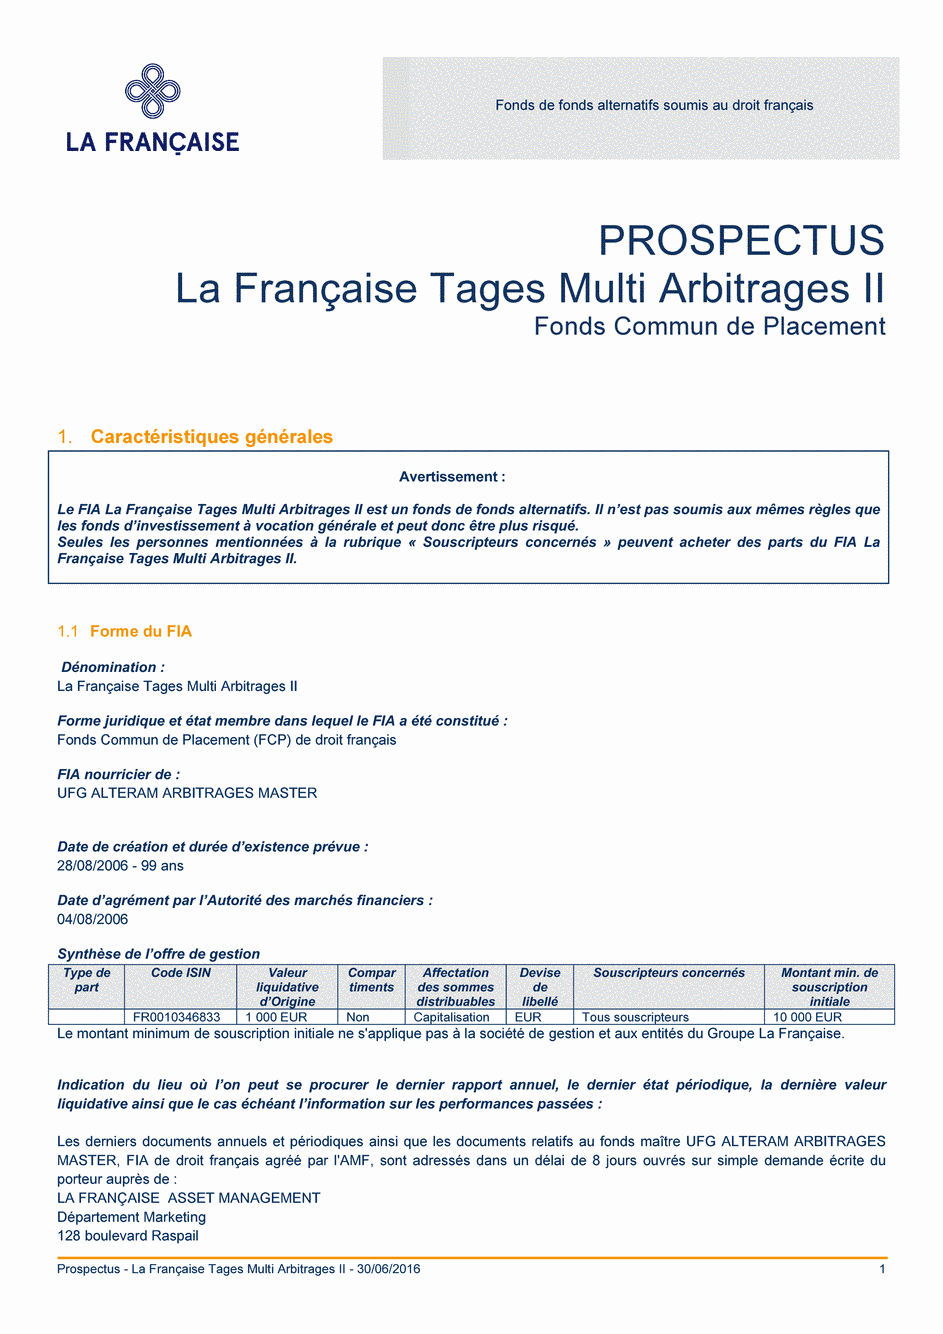 Prospectus La Française Tages Multi Arbitrages II - 30/06/2016 - Français